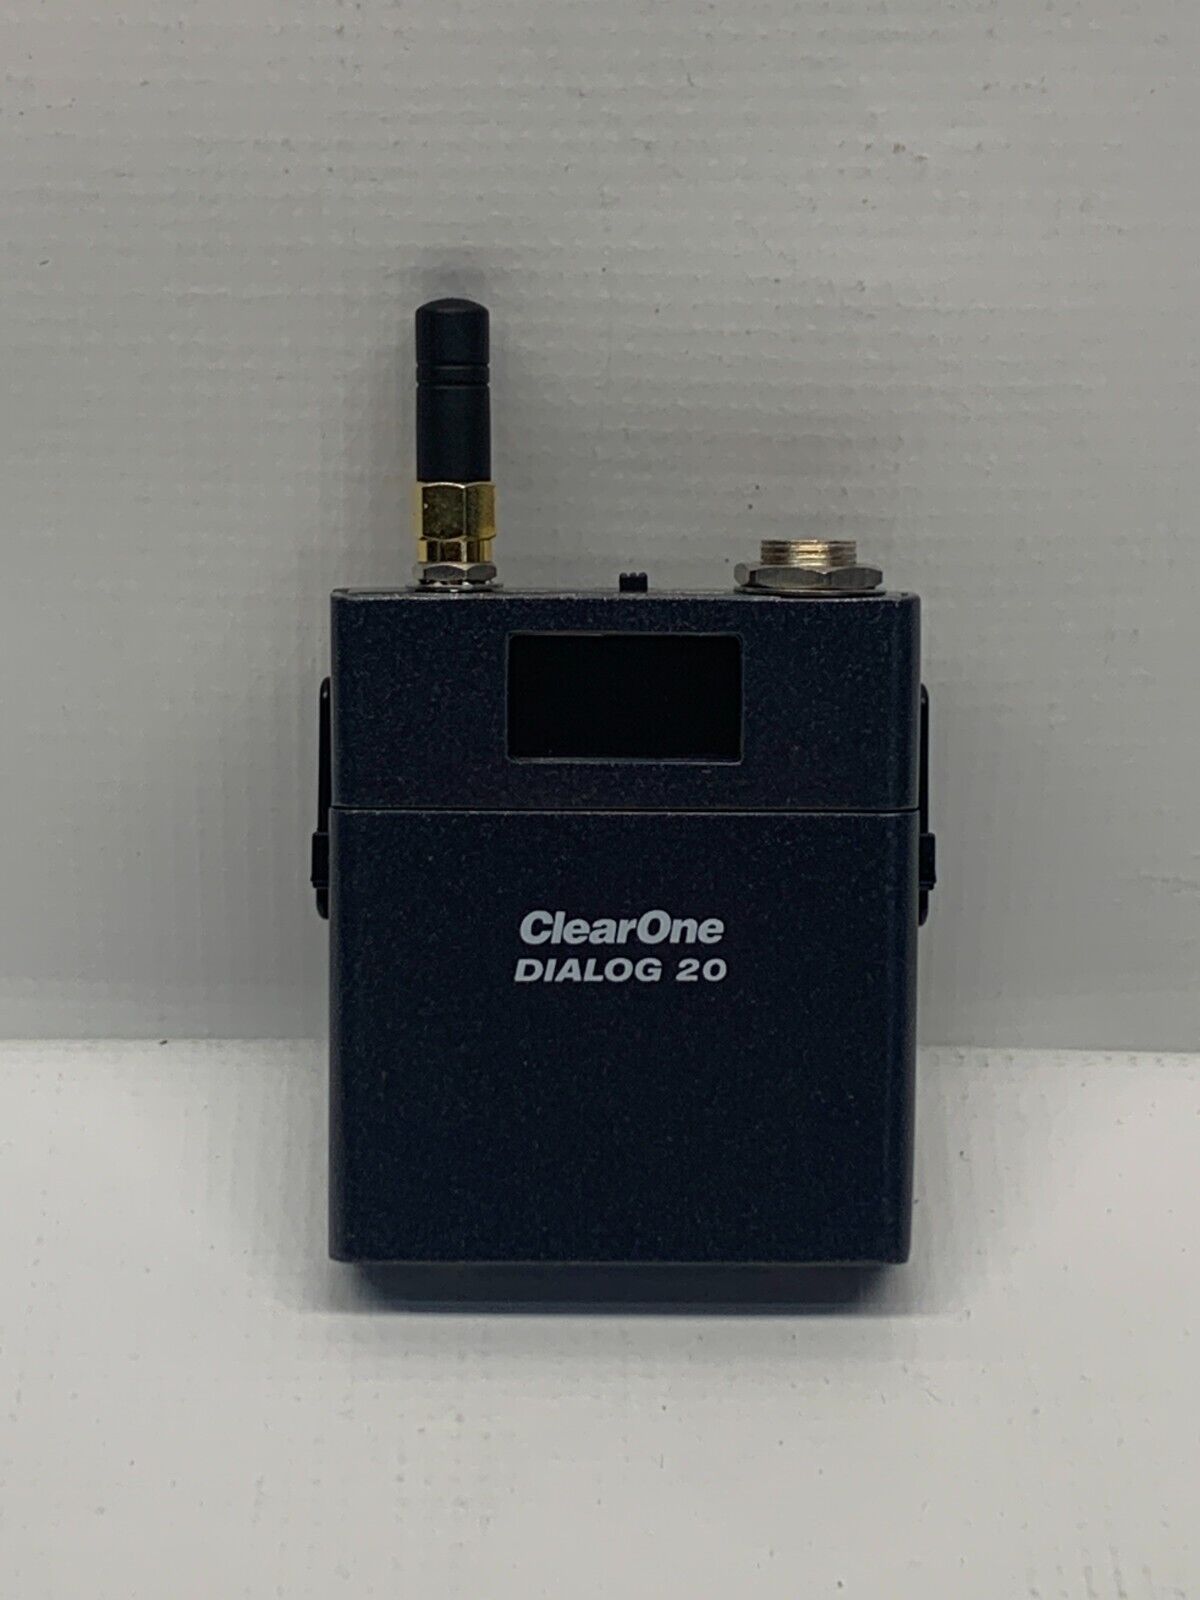 ClearOne Dialog 20 Wireless Beltpack Transmitter/Mic (RF 2.4 GHz) 910-6104-001